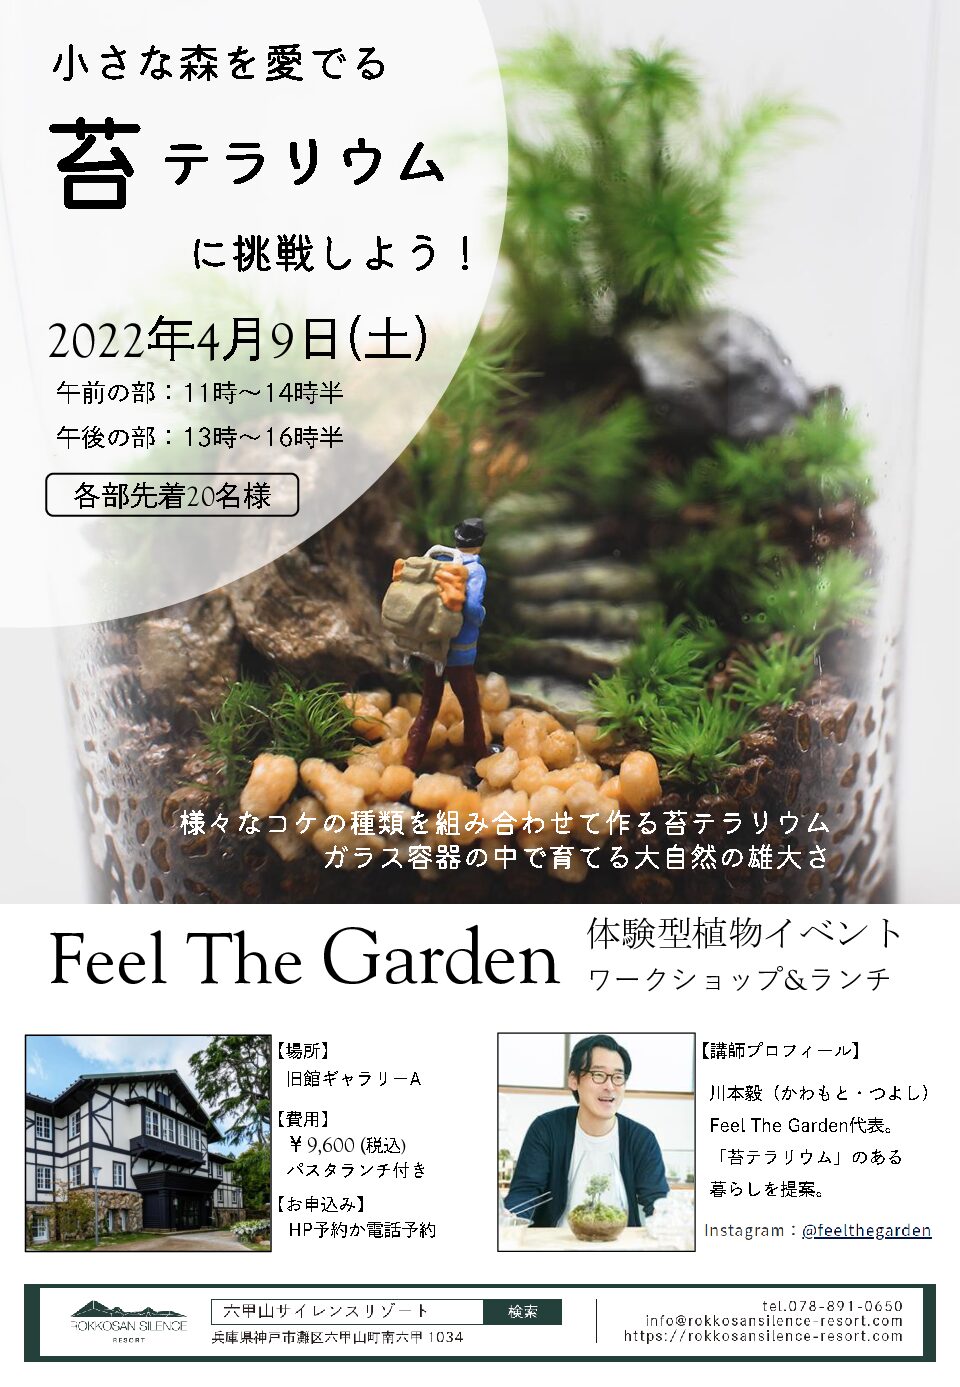 苔テラリウム Feel The Garden 体験型植物イベント 六甲山サイレンスリゾート Rokkosan Silence Resort